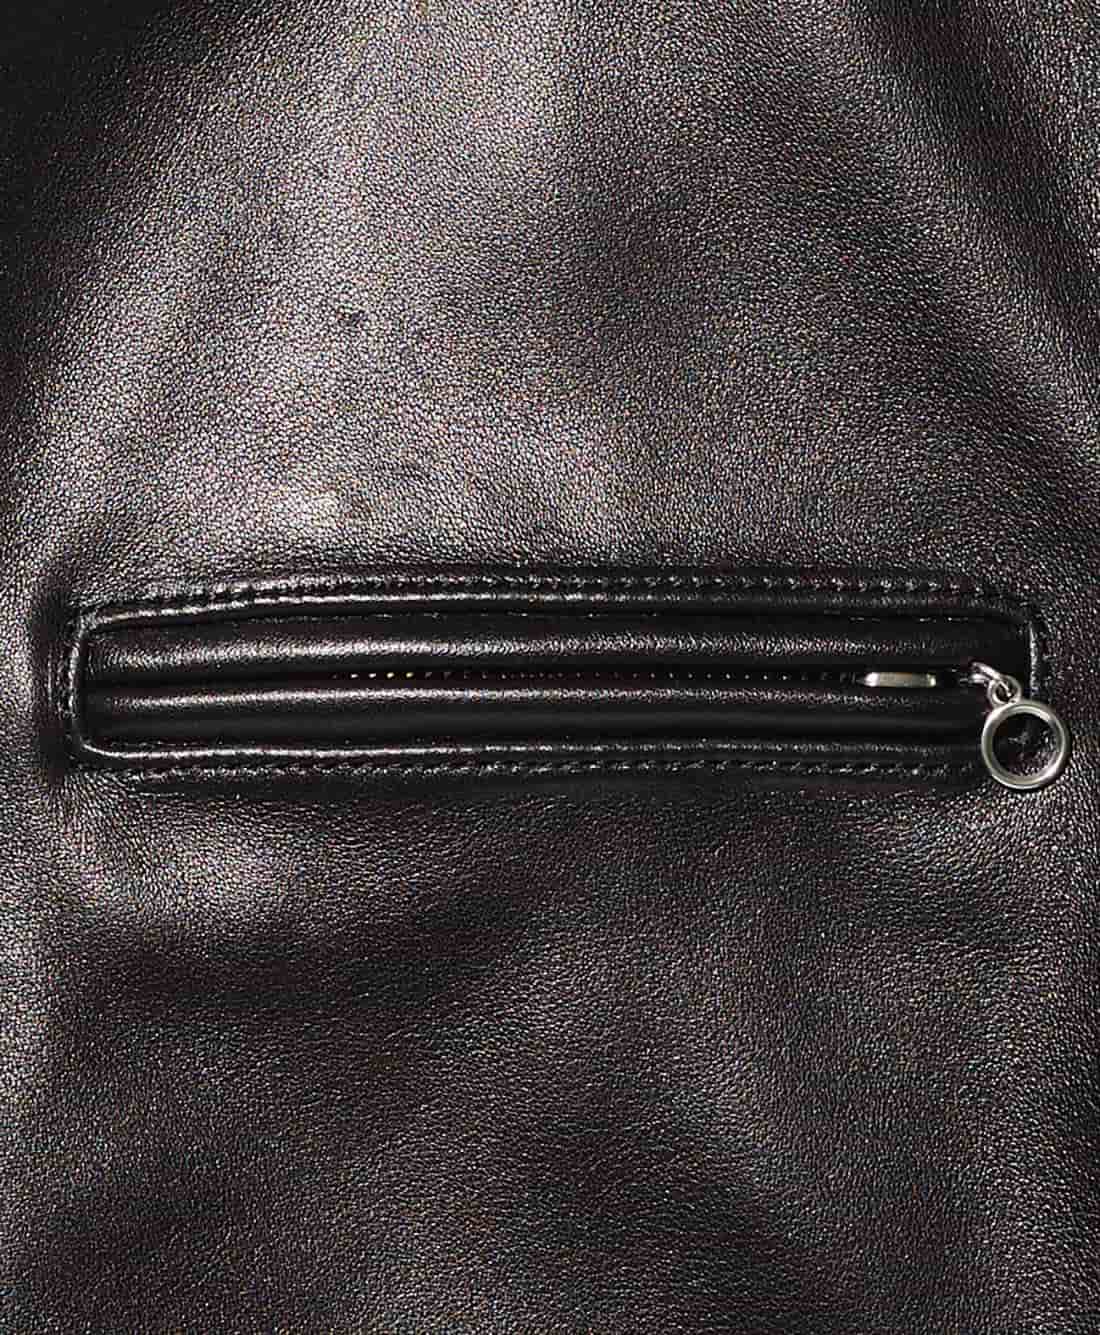 フロントポケットは、ムシ隠しのファスナーポケットを採用